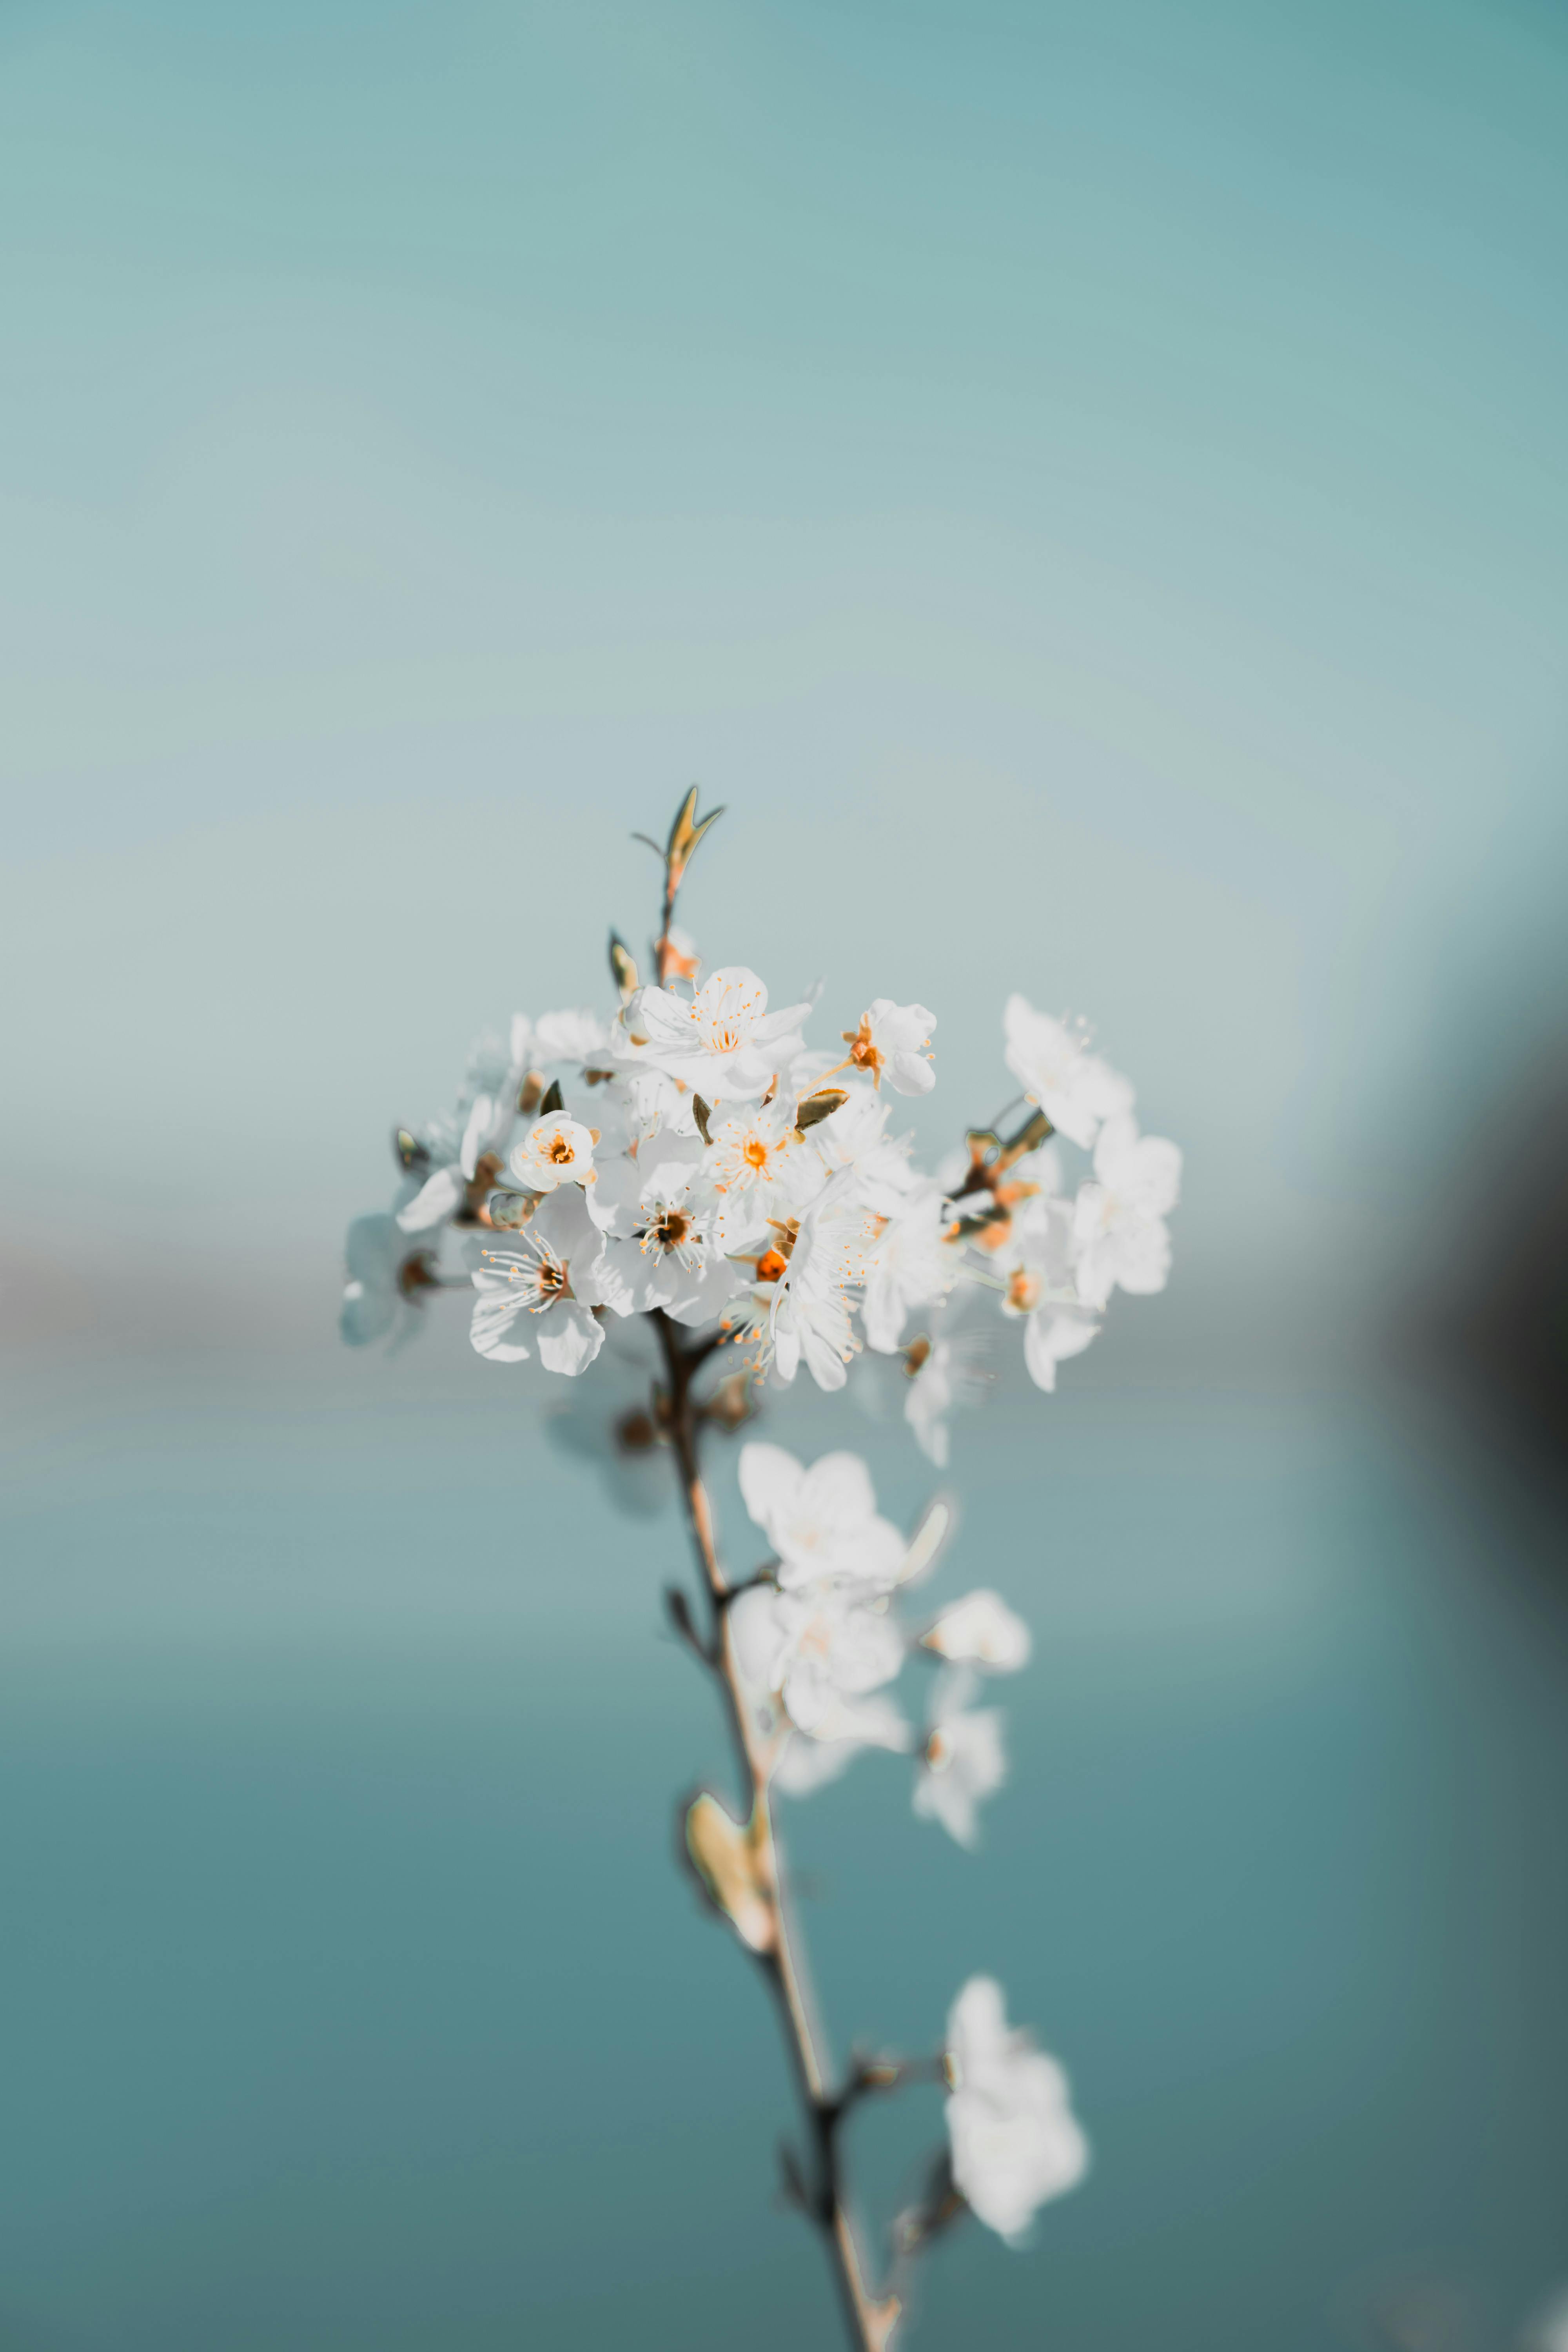 Bạn yêu thích sự đơn giản và tinh tế của sắc trắng? Hãy xem ngay hình ảnh miễn phí về hoa trắng nhỏ cùng lá xanh tươi tắn. Đây là bức tranh hài hòa giữa sắc trắng và xanh lá, chắc chắn sẽ làm bạn cảm thấy thư giãn và đầy cảm hứng.